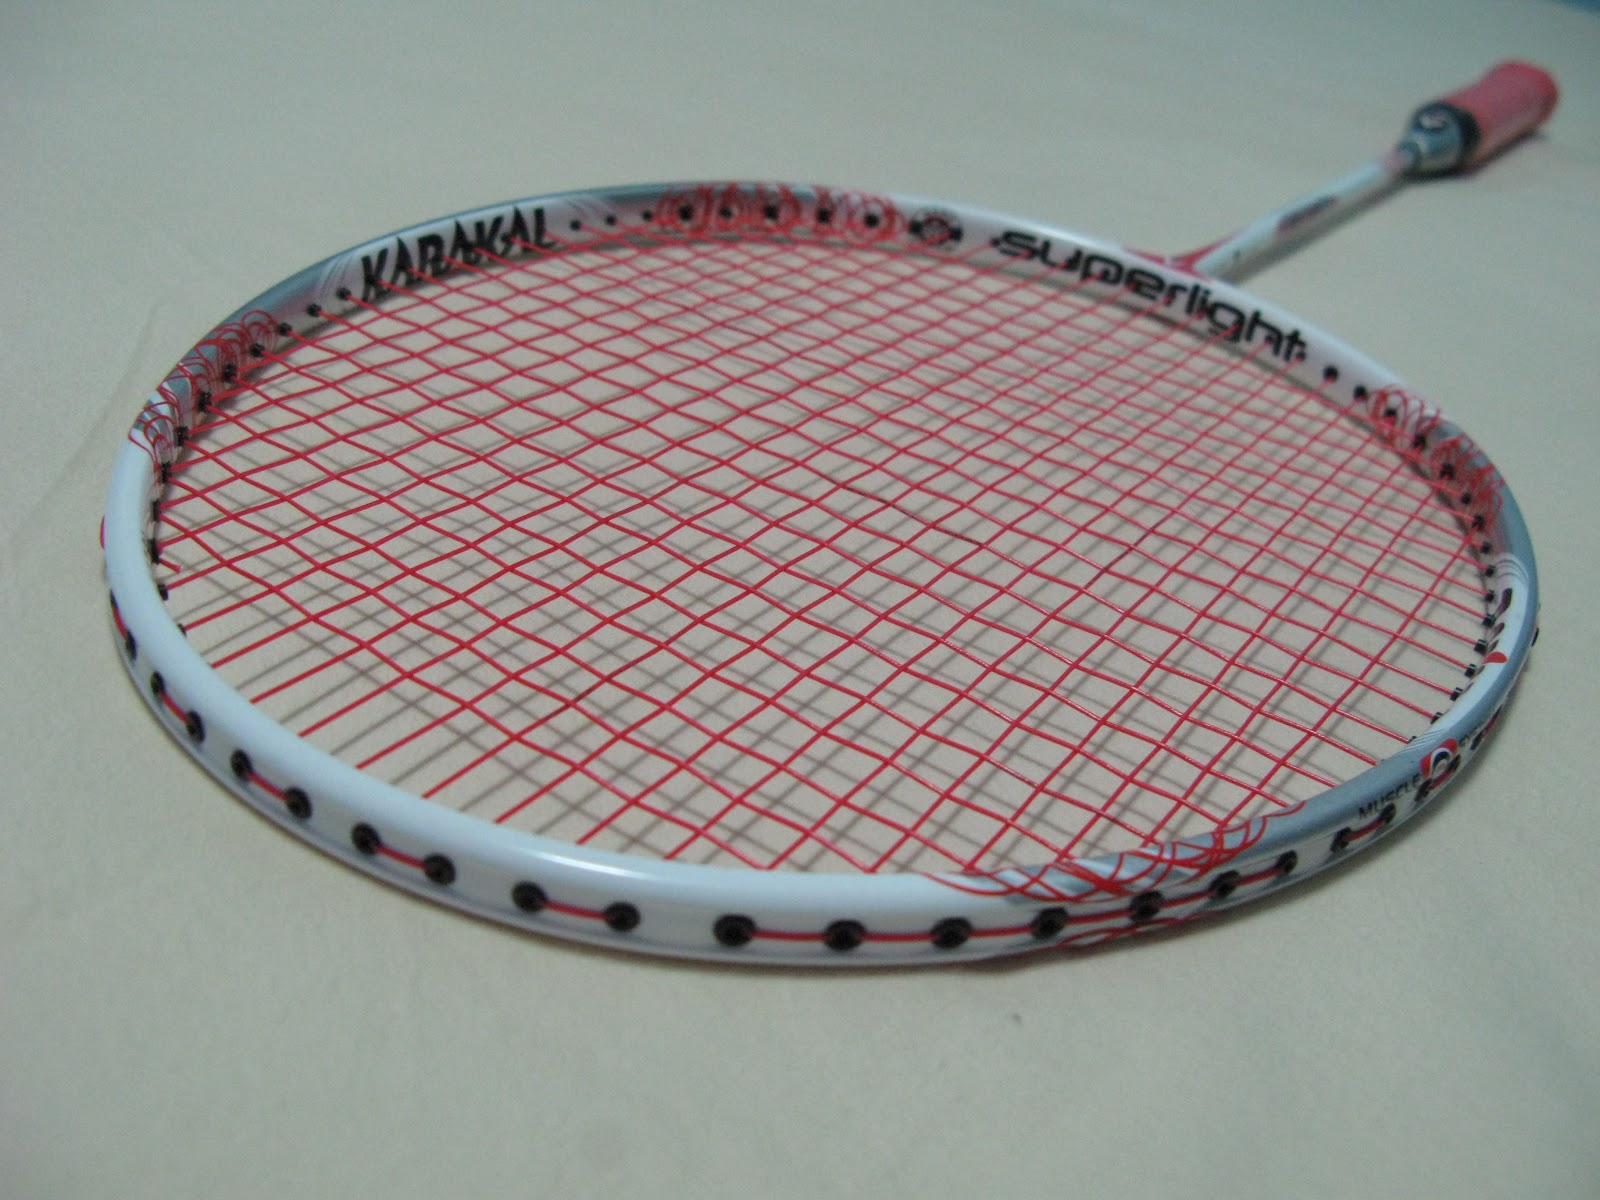 Of badminton things: Badminton Racket Review: Karakal SL